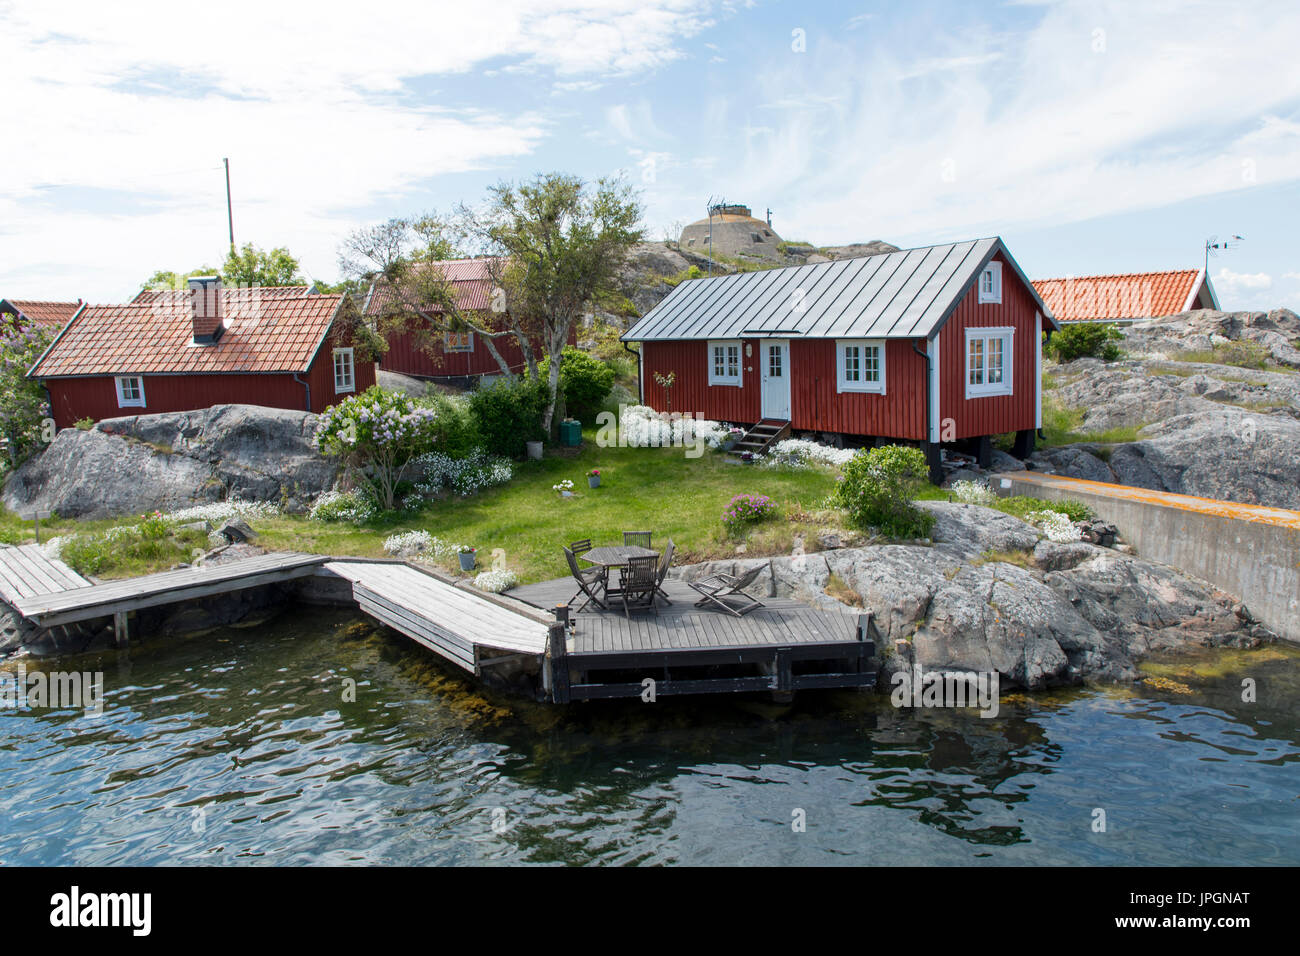 Certaines maisons suédoises rouge sur une île avec de l'eau inf/des maisons Banque D'Images